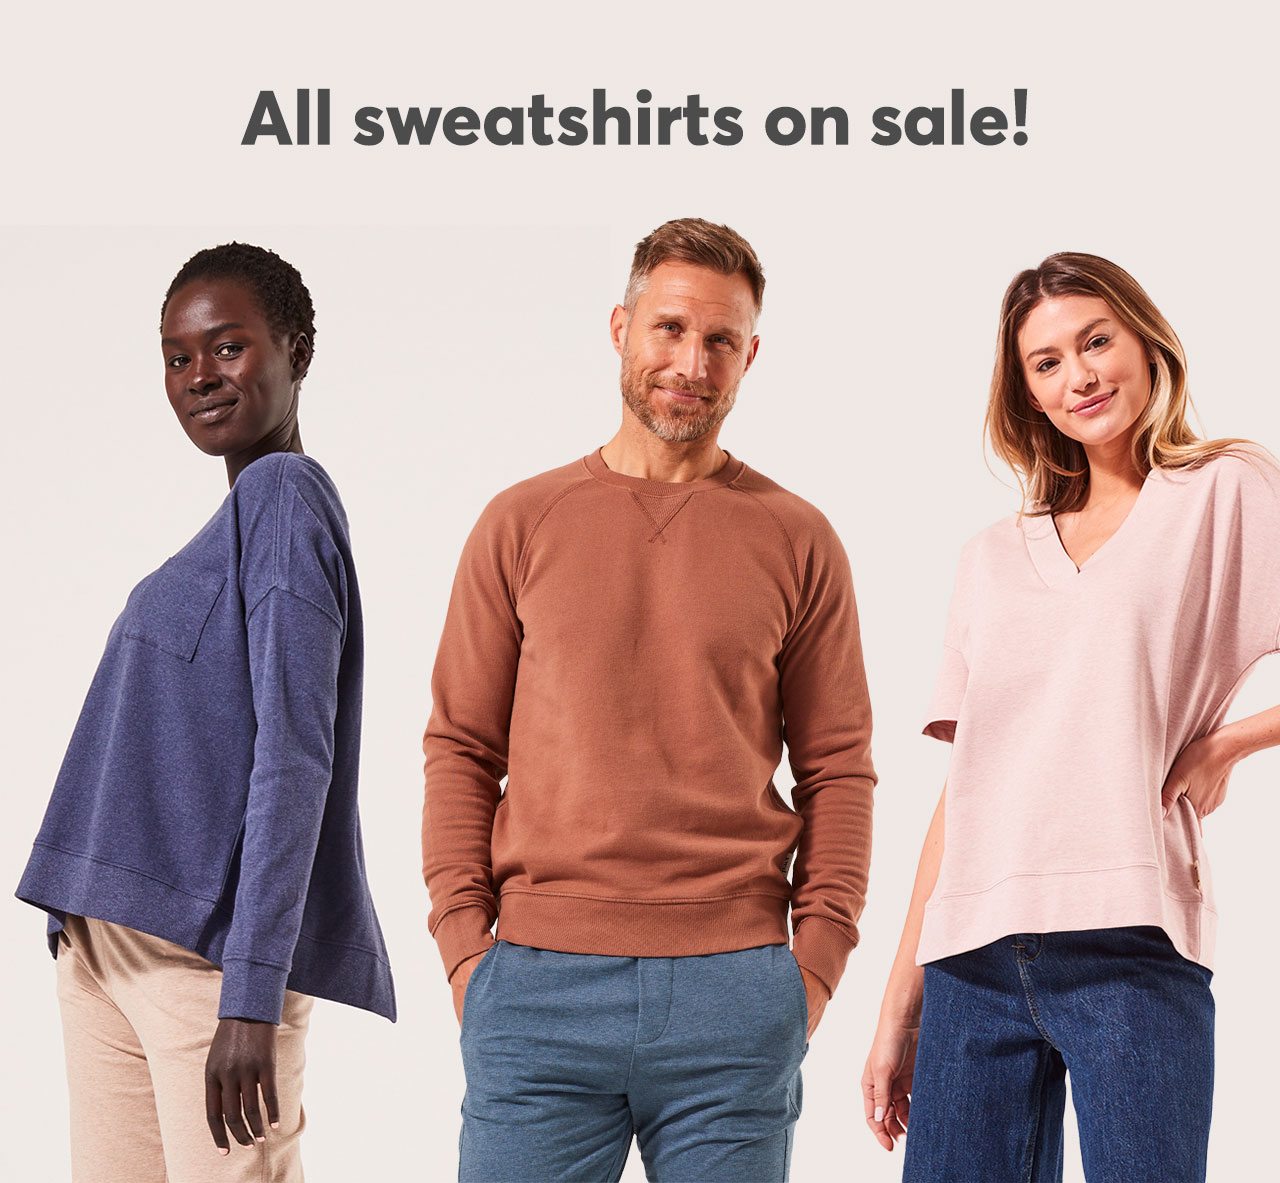 All sweatshirts on sale!